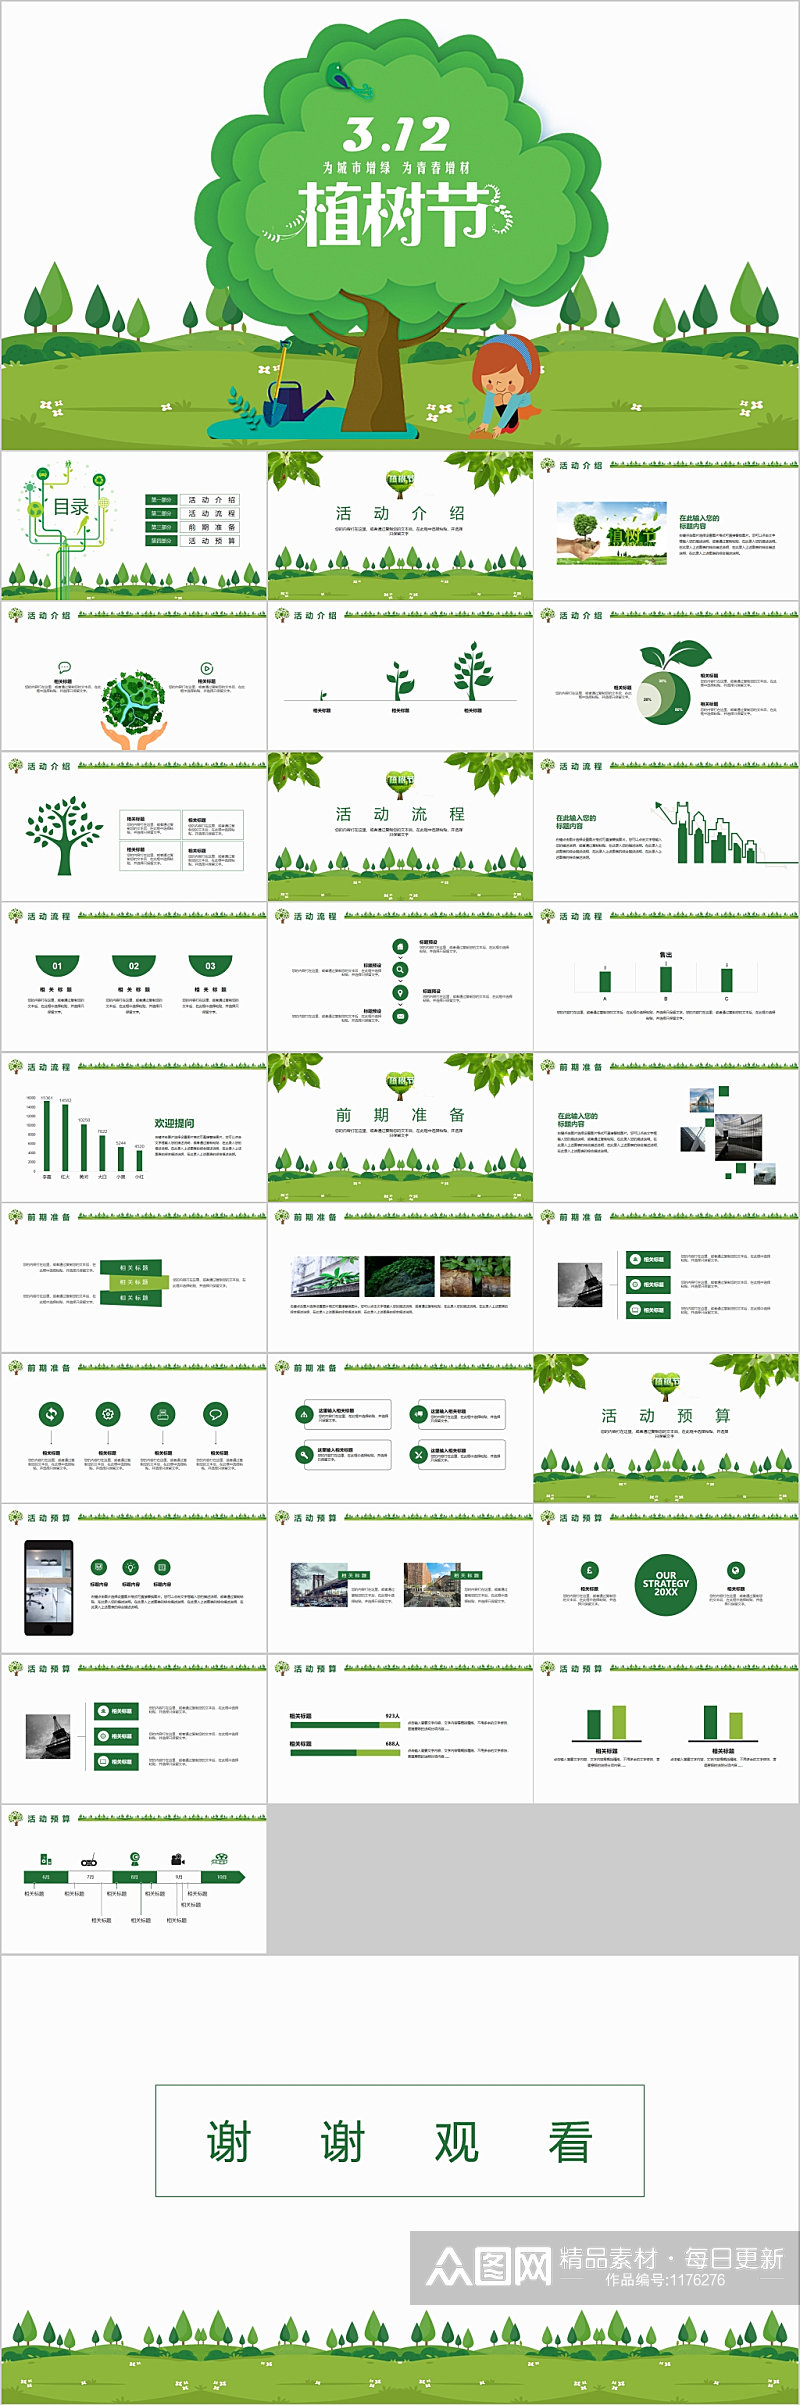 绿色环保植树节PPT模板素材